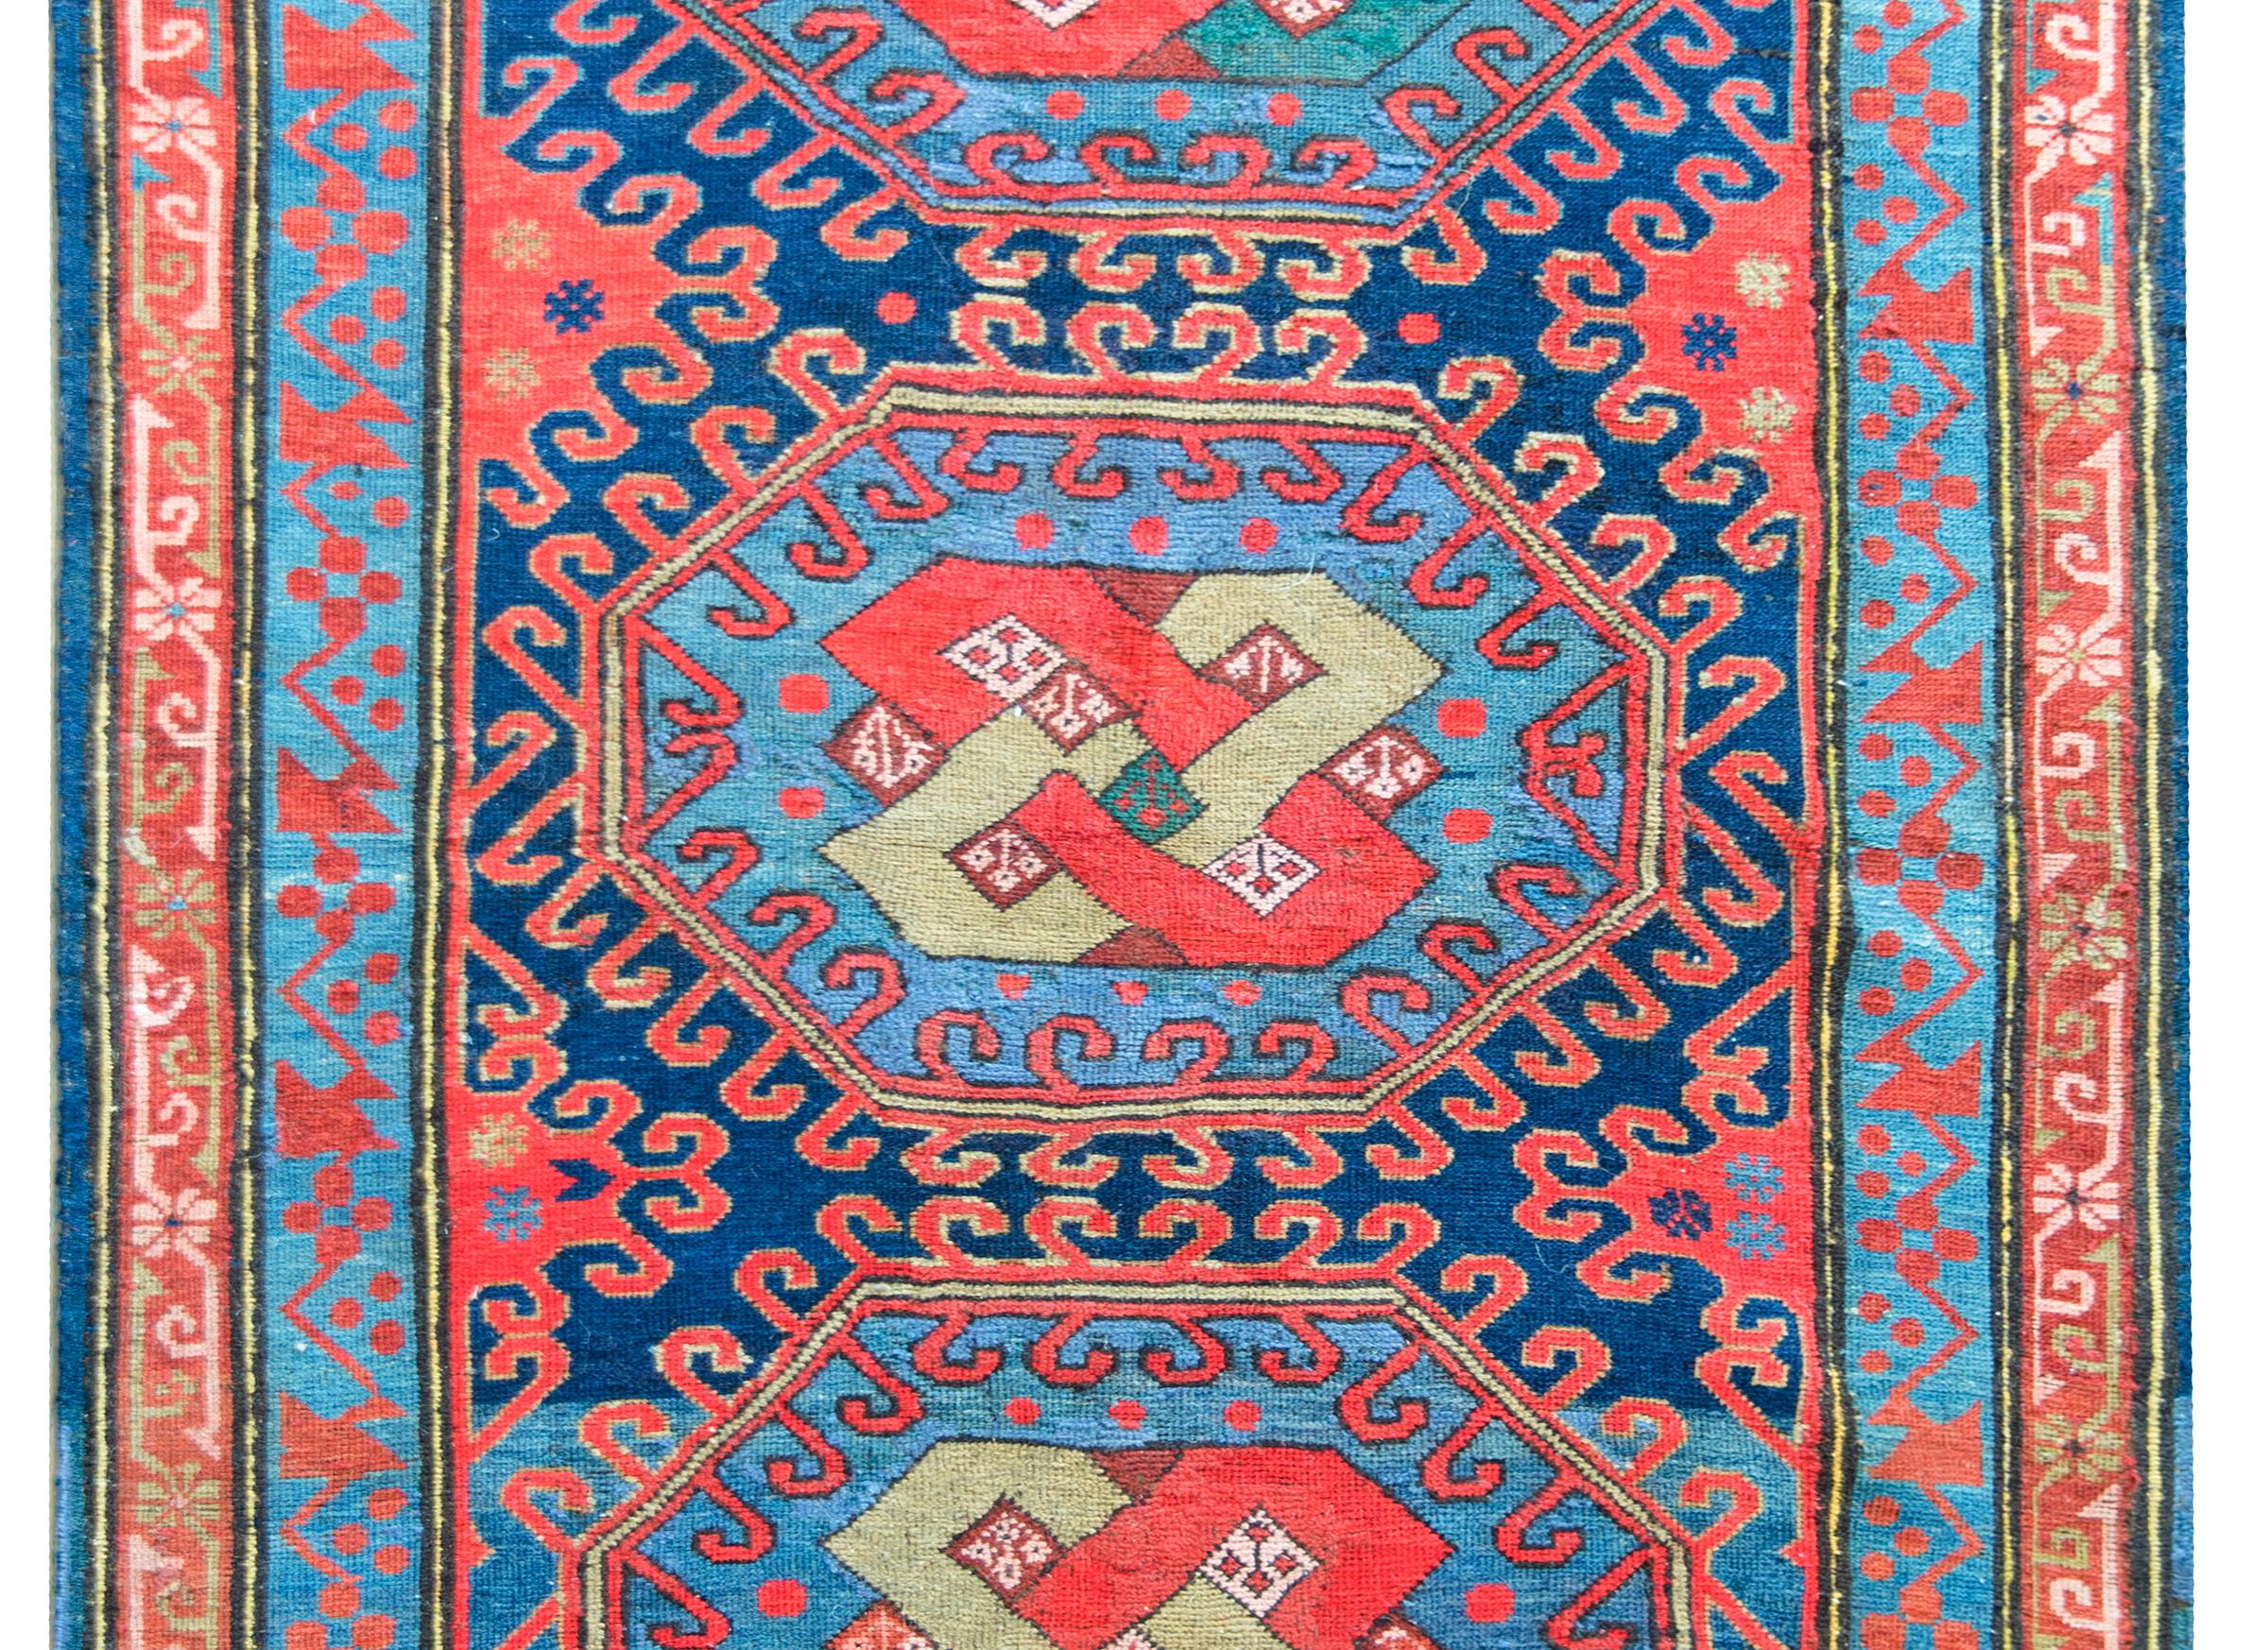 Ein unglaublicher persischer Kazak-Teppich aus dem frühen 20. Jahrhundert mit drei zentralen Medaillons, jedes mit einem endlosen Knotenmuster, umgeben von stilisierten Blumenmustern, und alle umgeben von einer komplexen Bordüre mit zwei floral